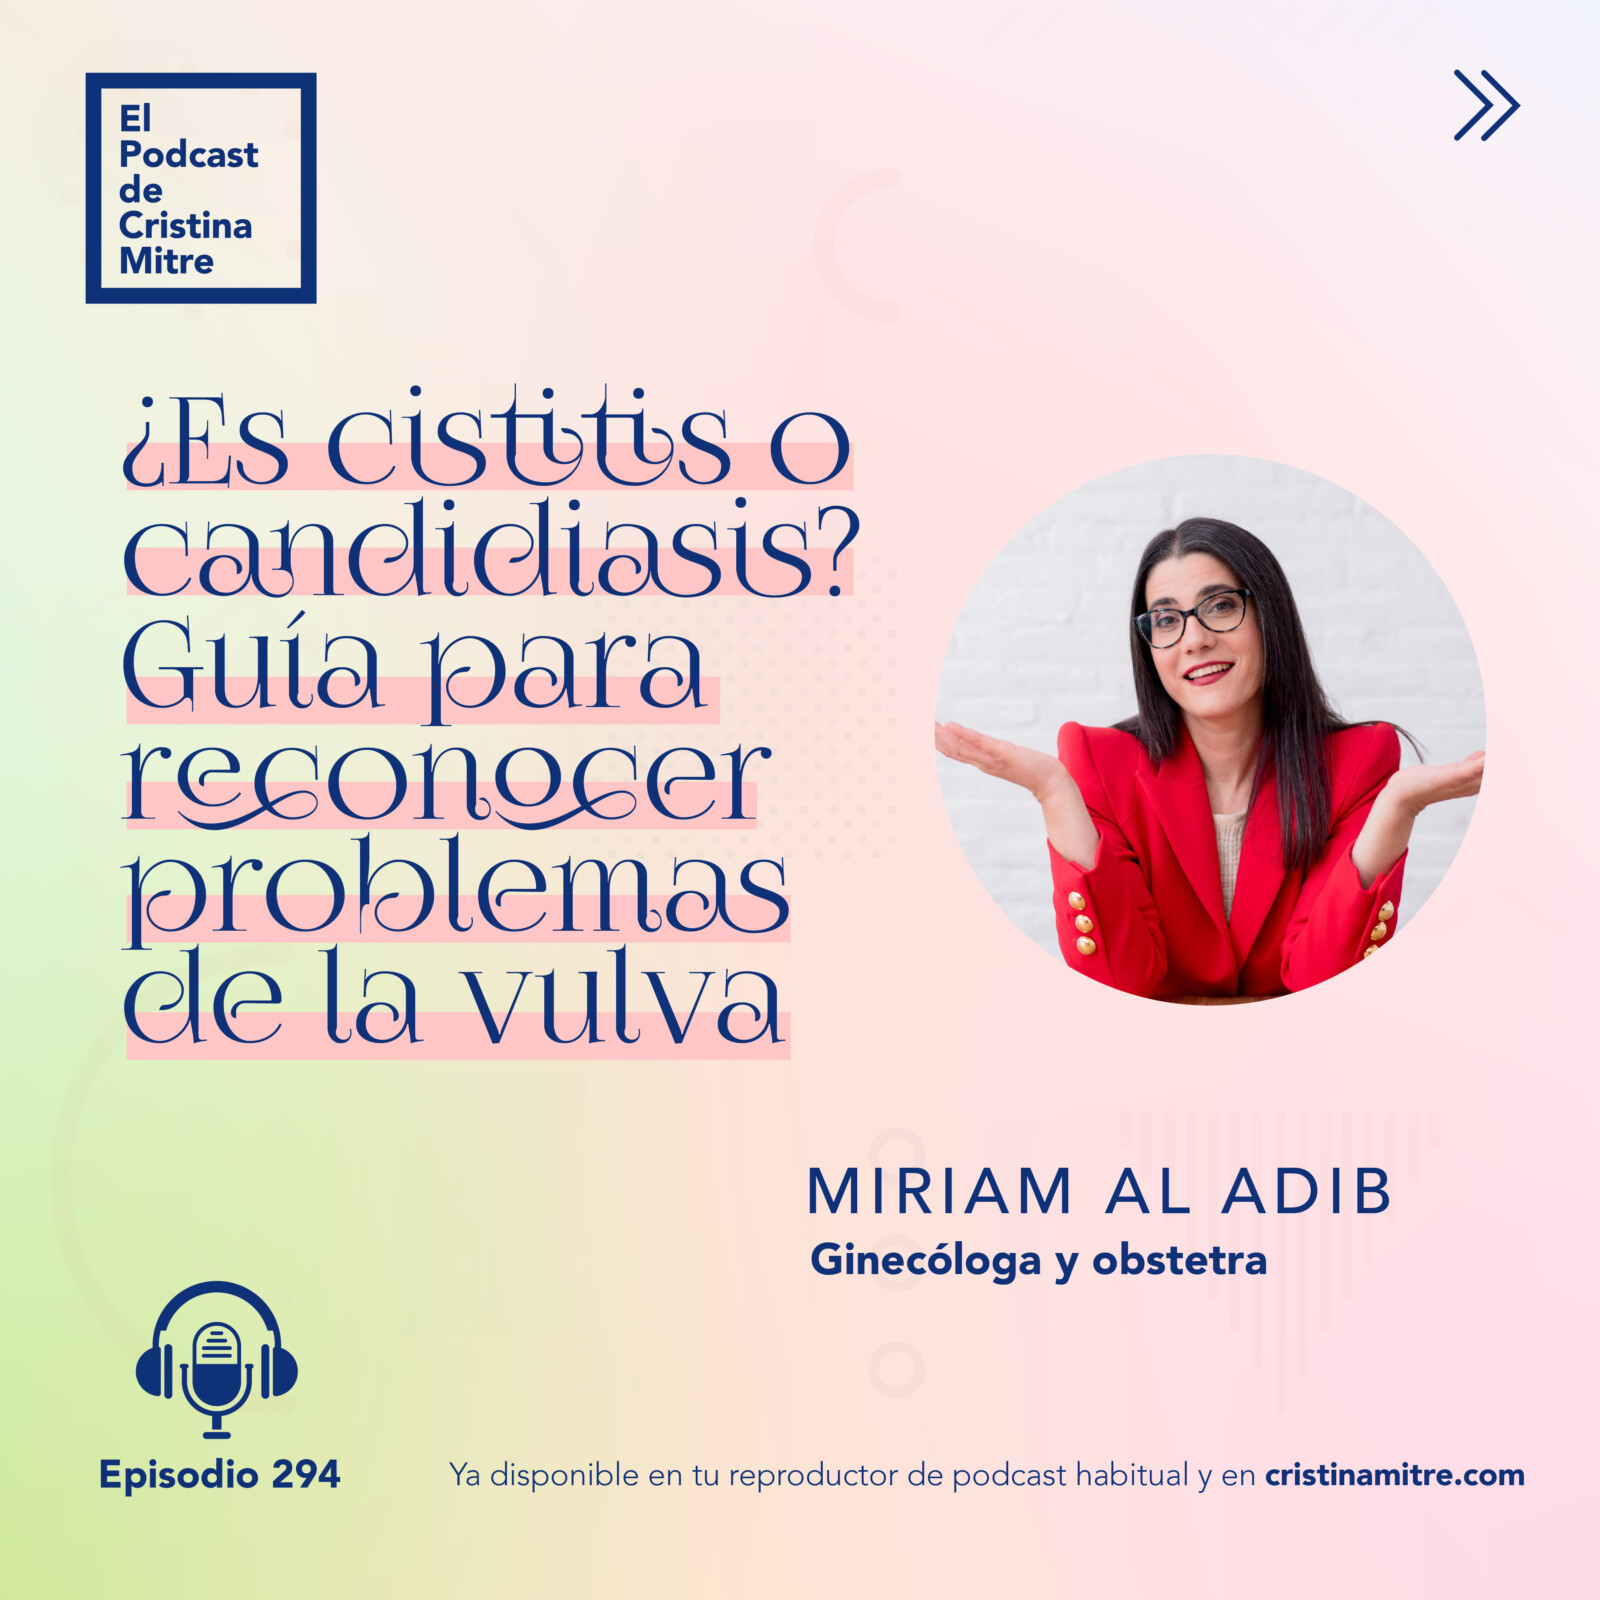 el podcast de Cristina Mitre Miriam Al Adib vulva